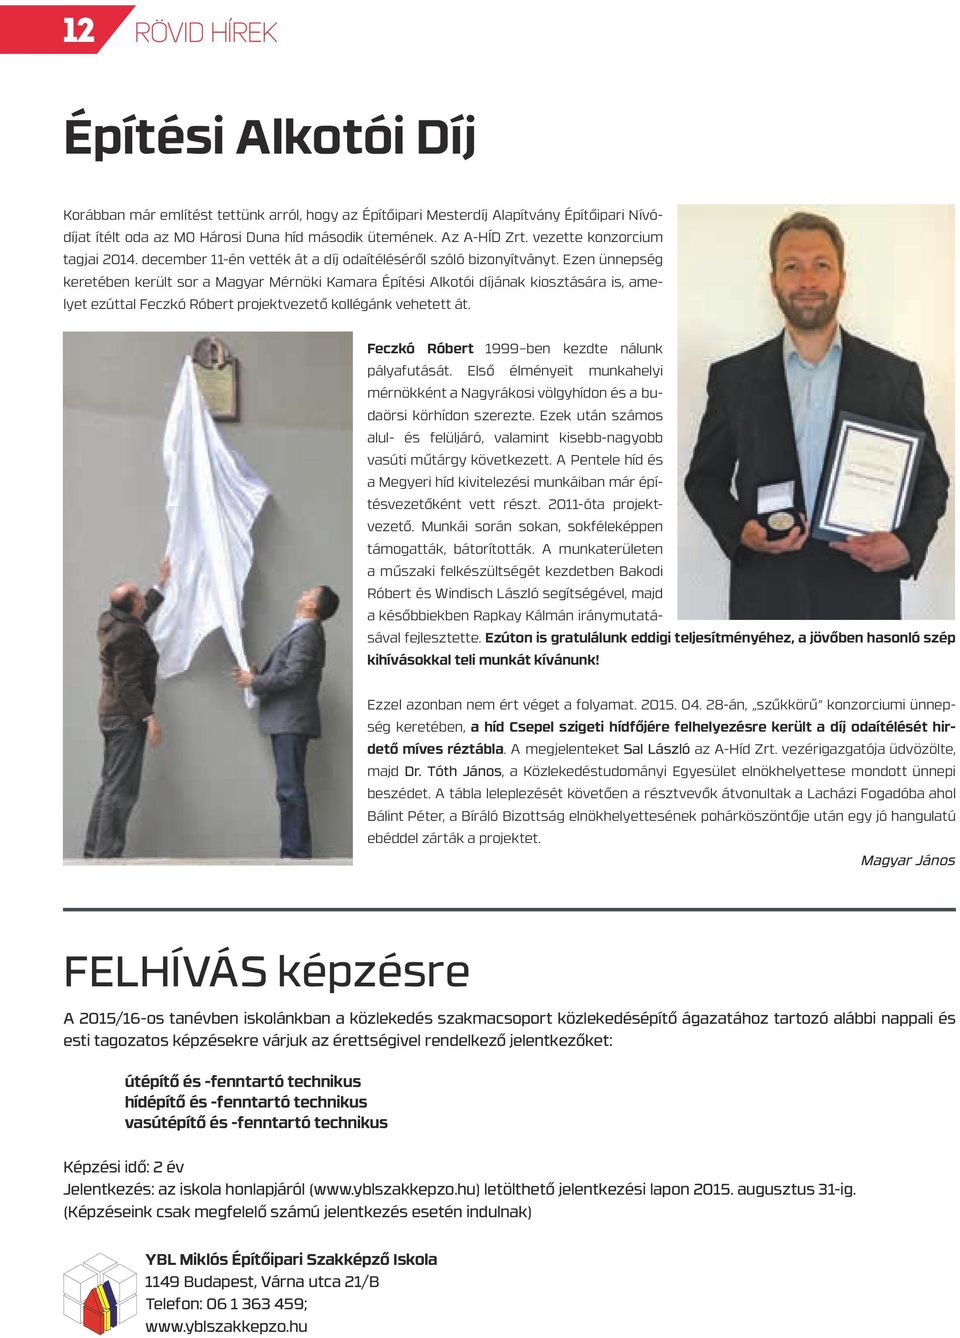 Ezen ünnepség keretében került sor a Magyar Mérnöki Kamara Építési Alkotói díjának kiosztására is, amelyet ezúttal Feczkó Róbert projektvezető kollégánk vehetett át.